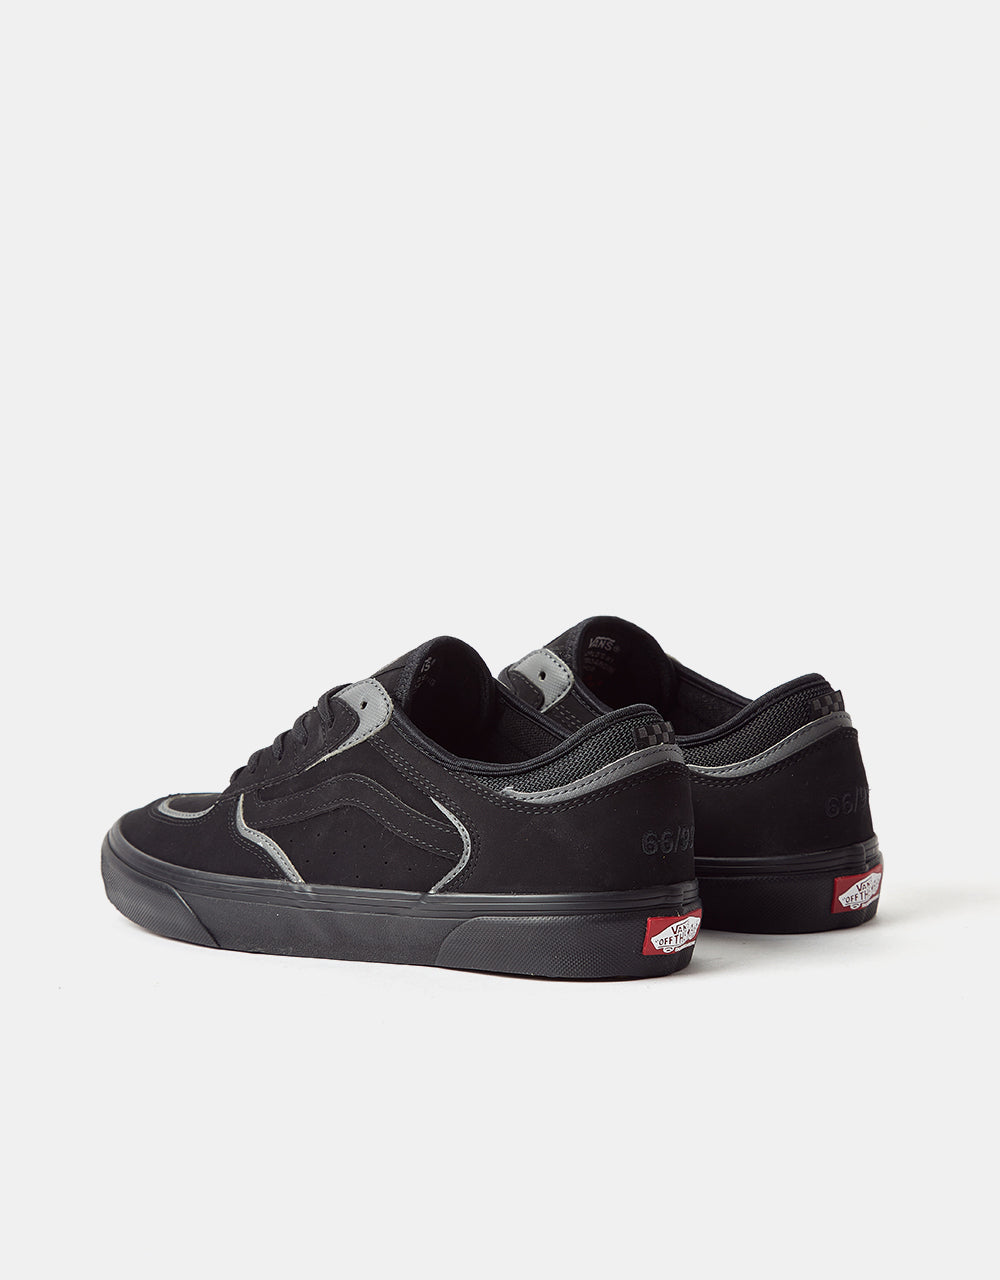 Vans Skate Rowley Skate Shoes - Black/Pewter